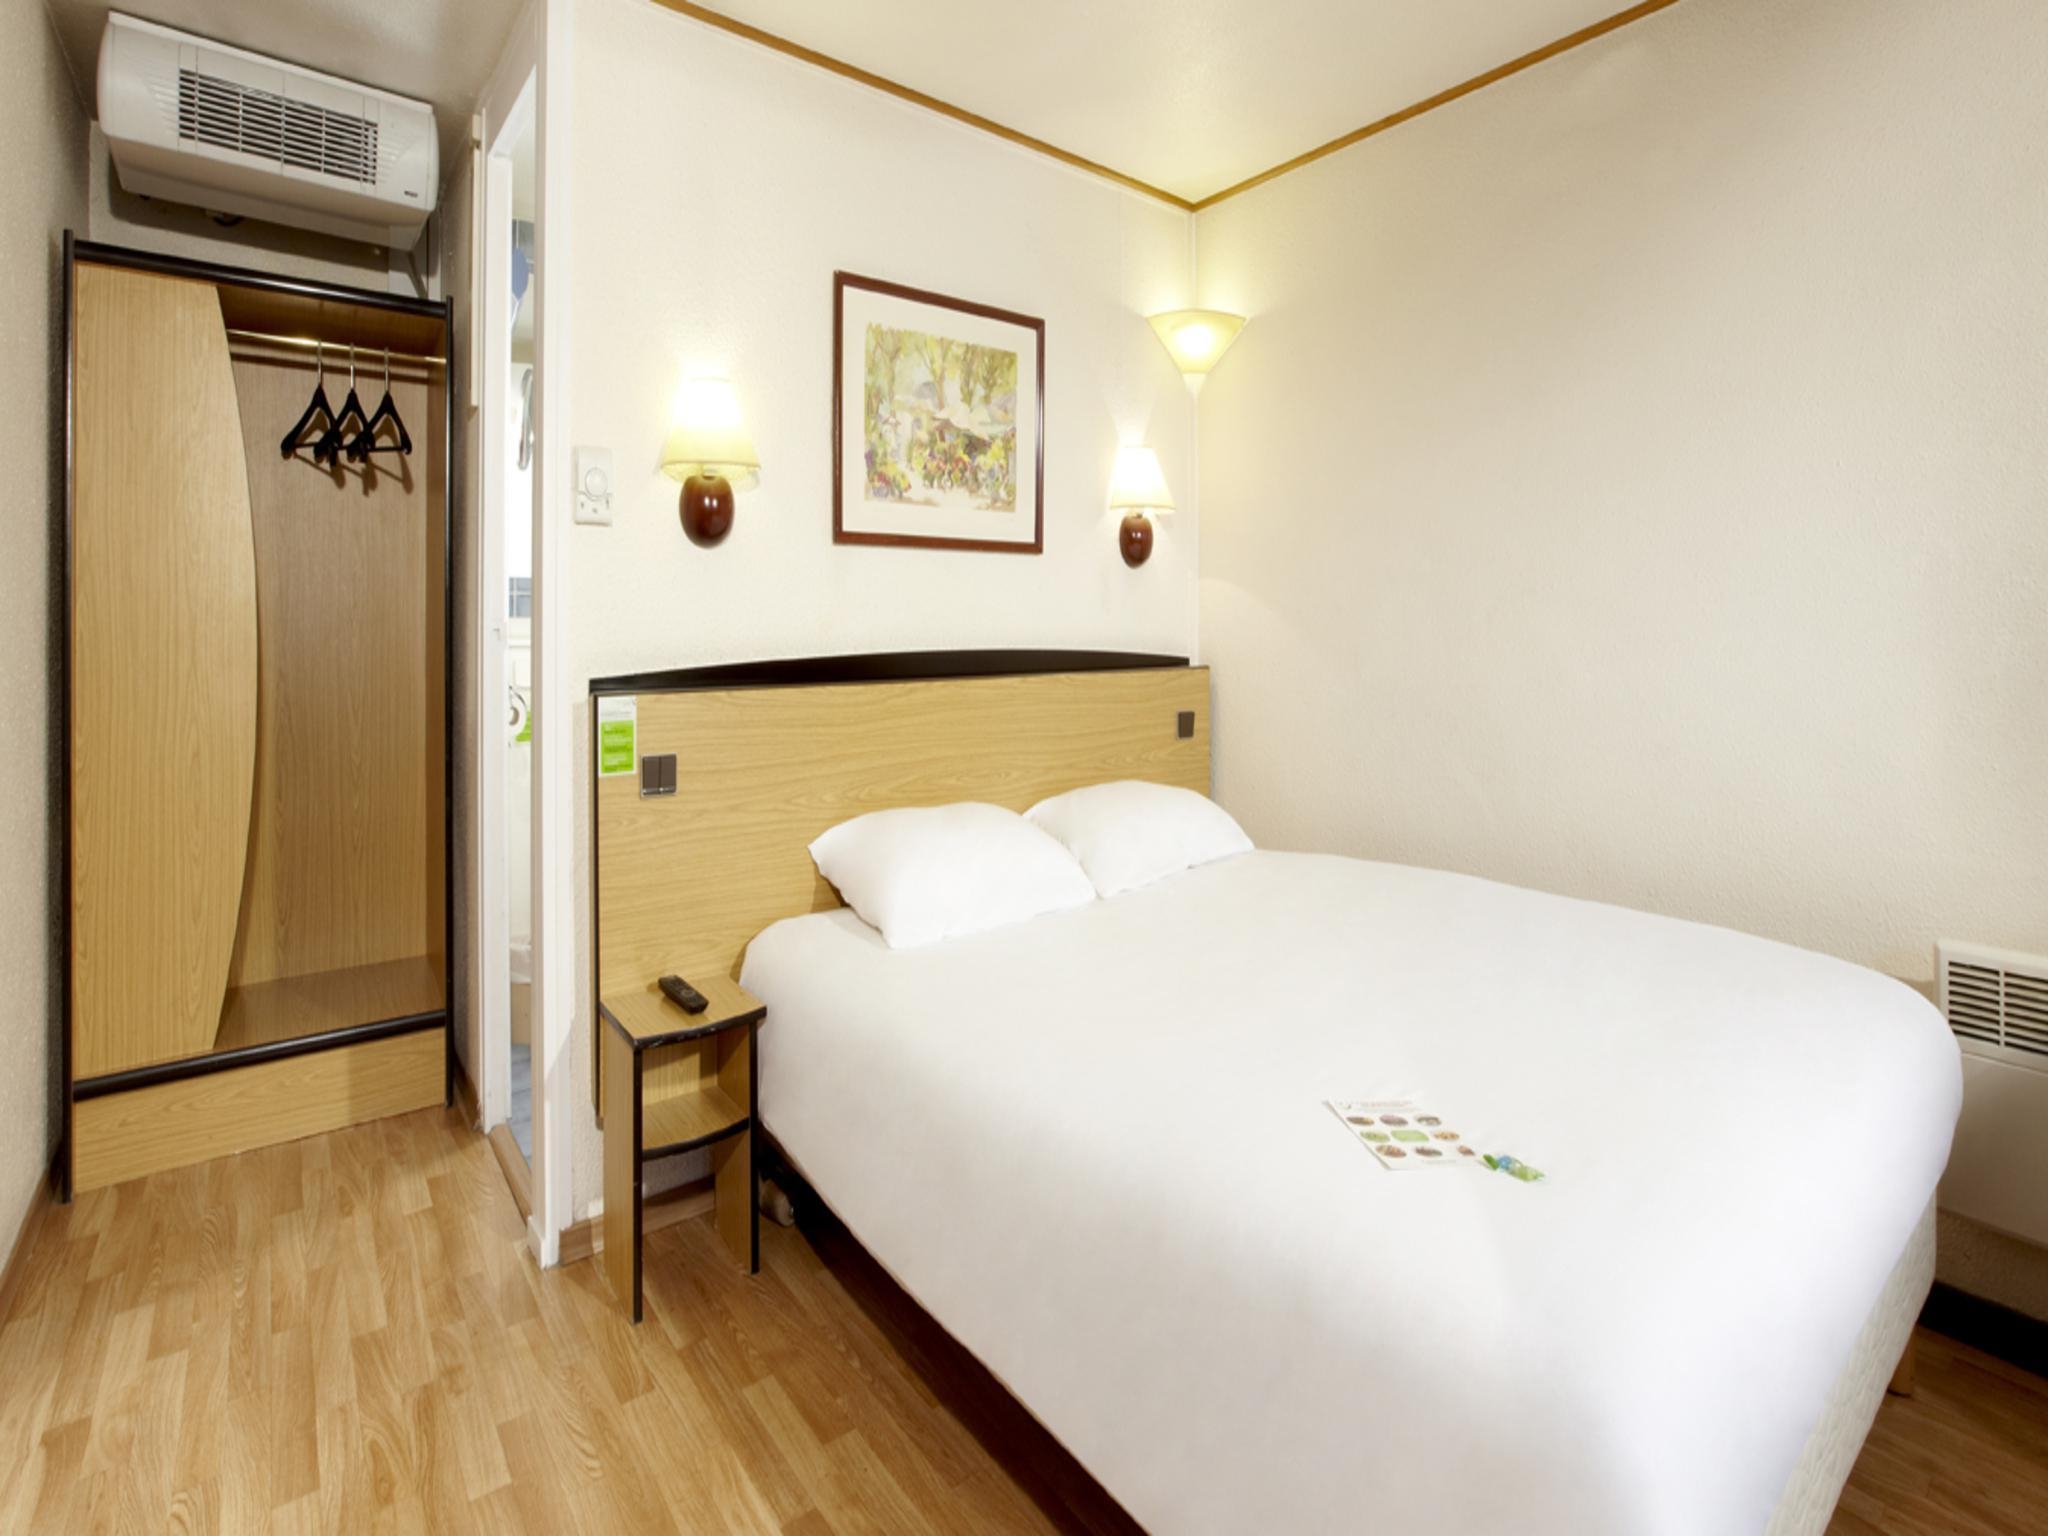 Hotel Campanile Sete - Balaruc - Sète chez HRS avec services gratuits